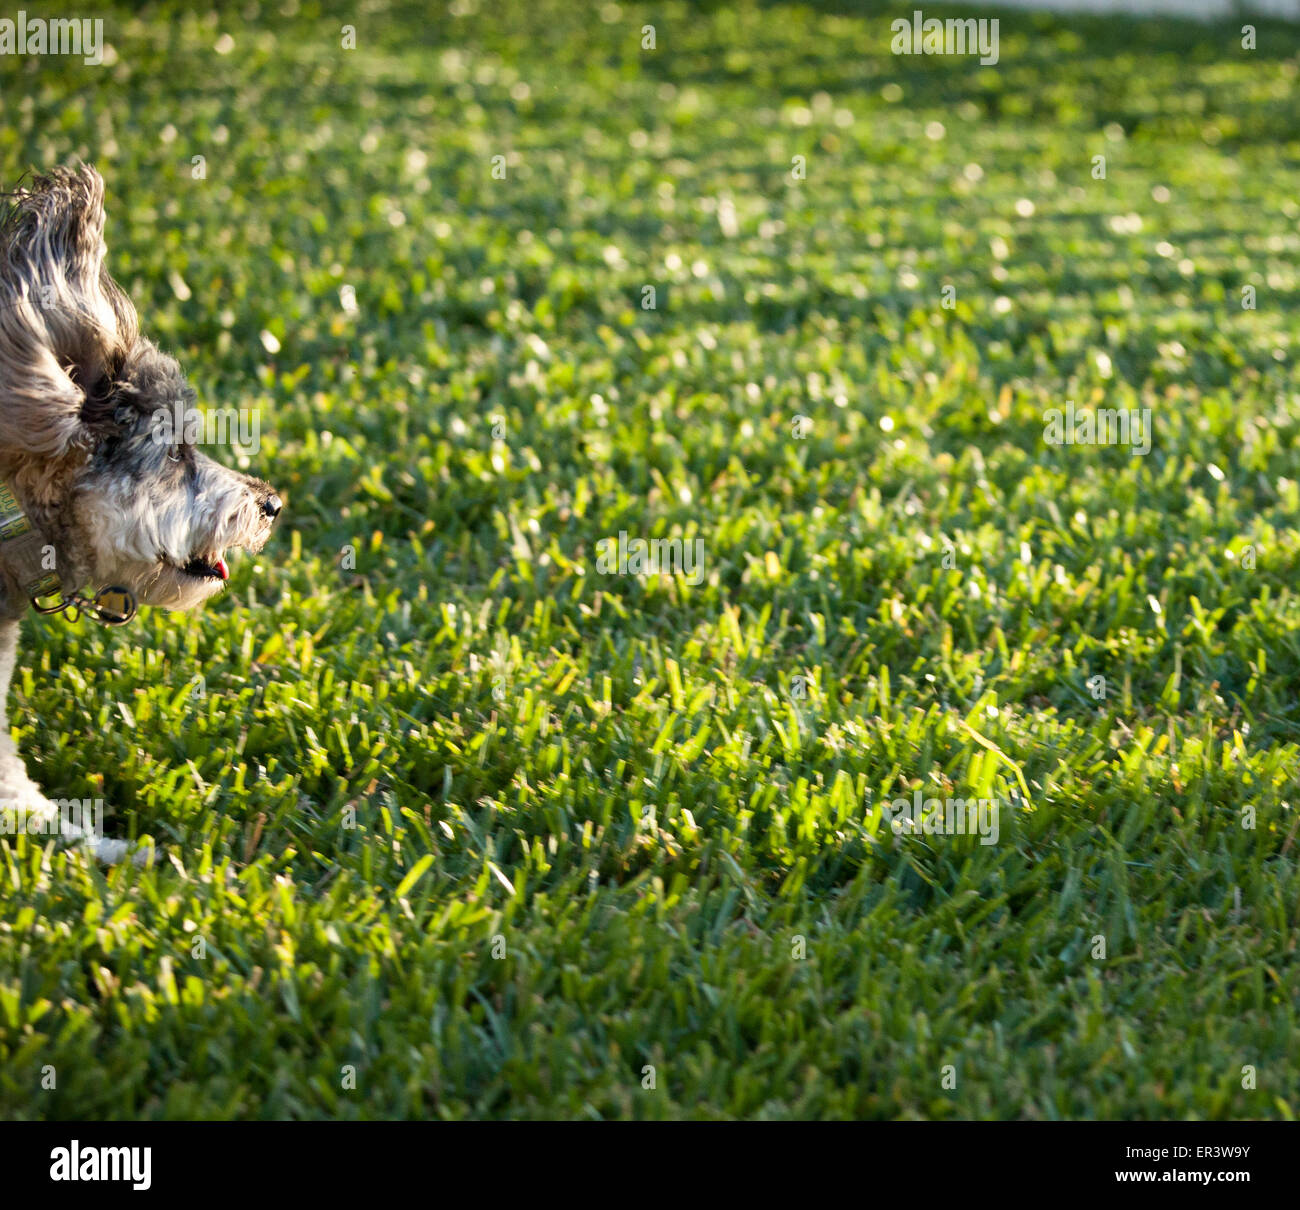 Dog running Stock Photo